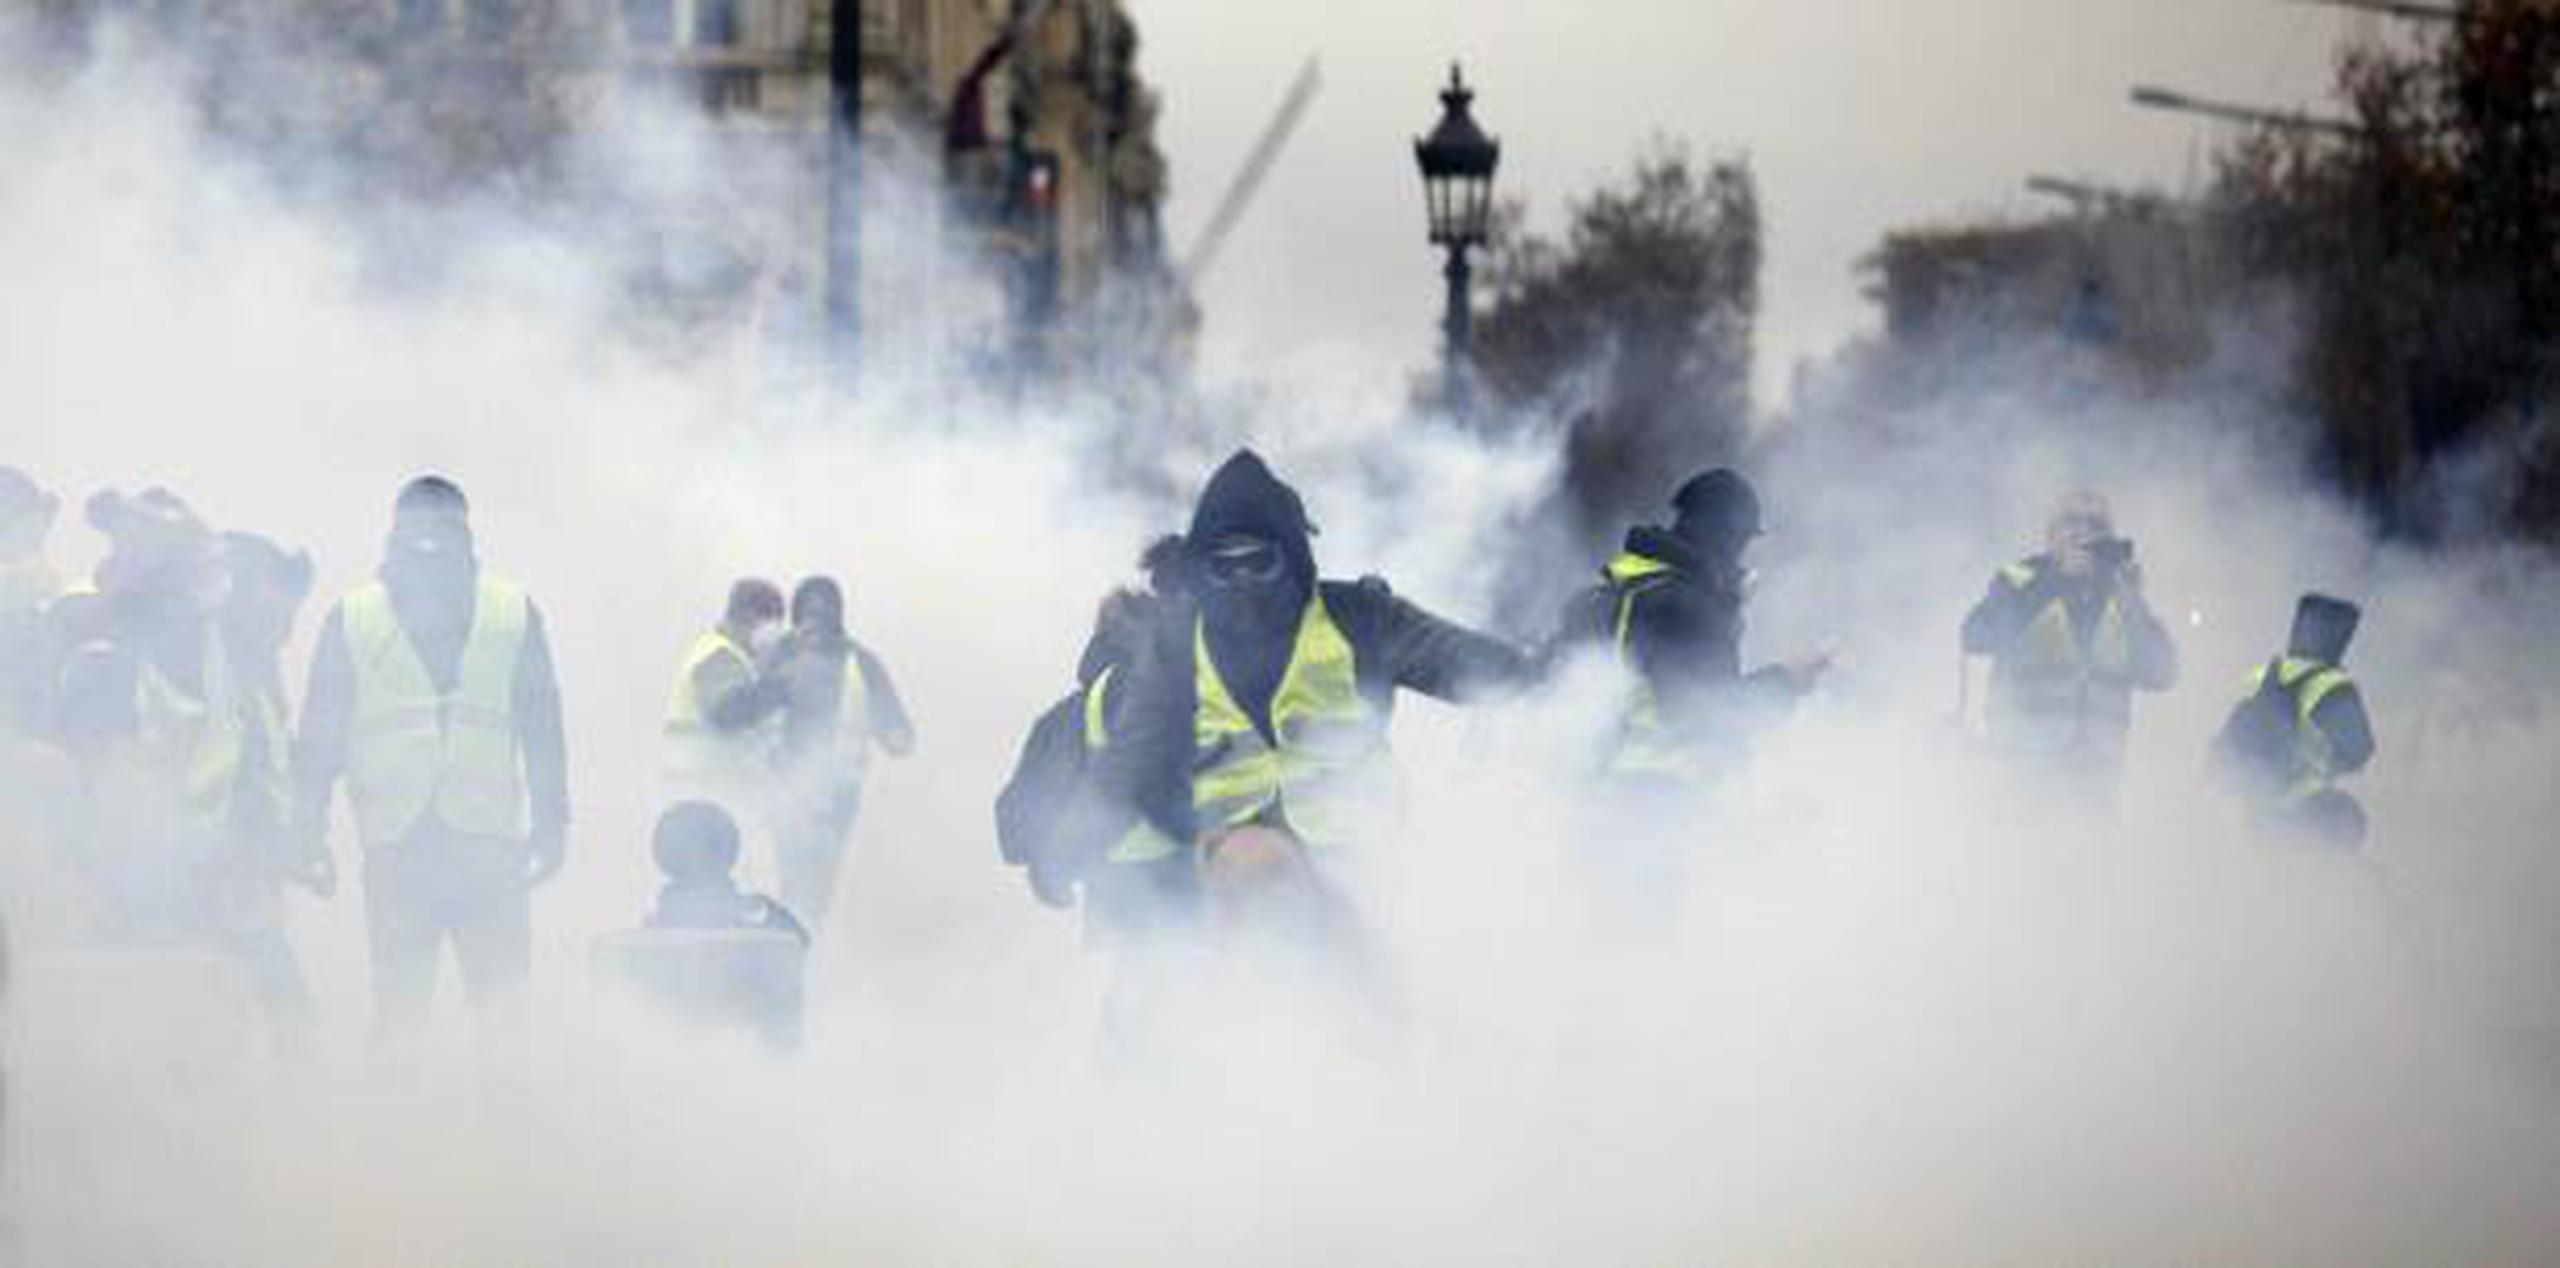 Manifestantes enmascarados protestaron el pasado sábado cerca de la avenida Champs-Elysees en París. (AP / Kamil Zihnioglu)